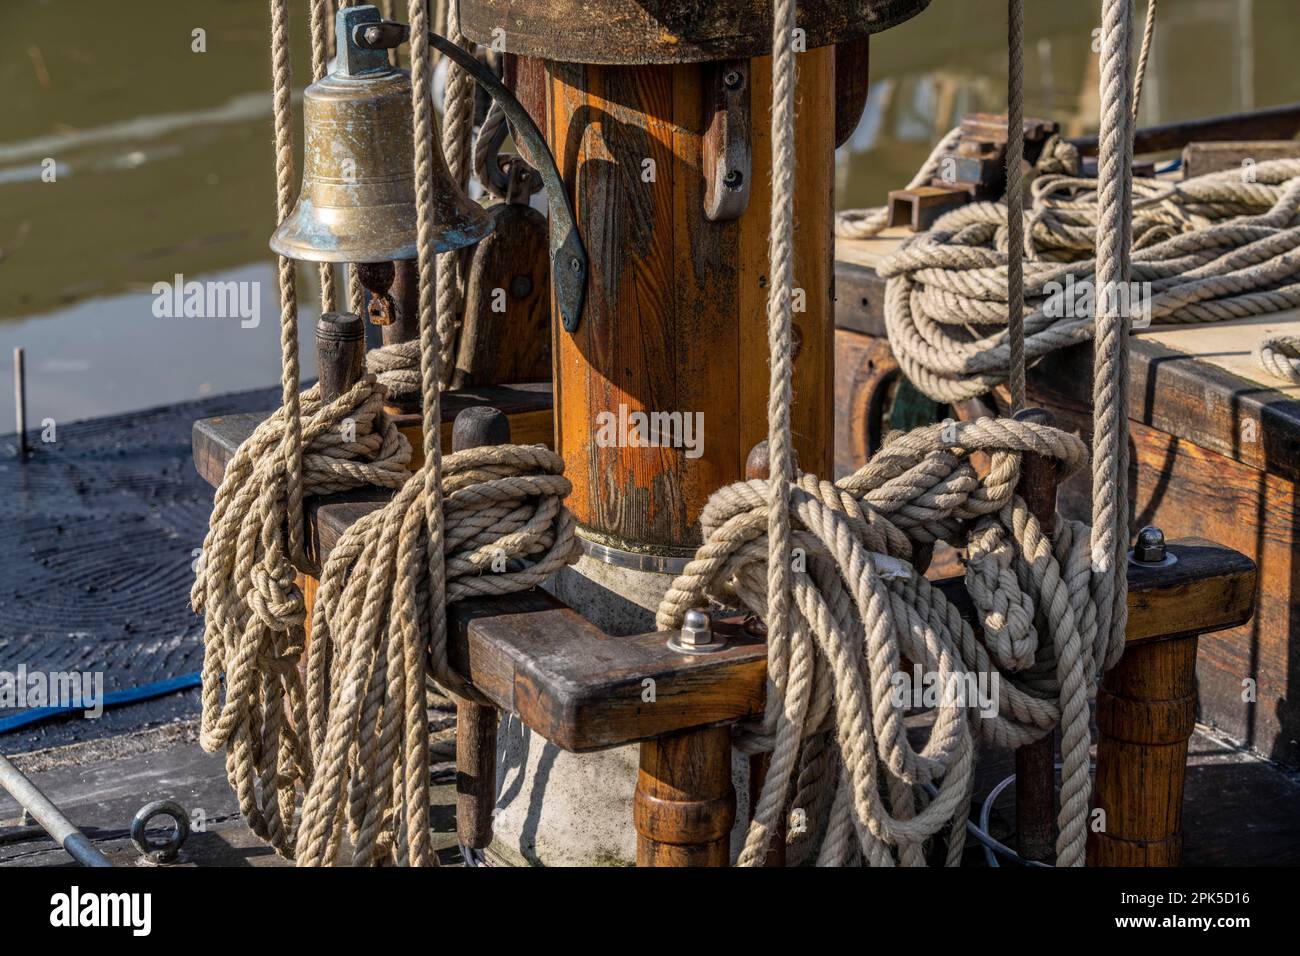 Voilier, gréement, cordes, cordes, nœuds, bateau en bois, nœuds marins, ordre, désordre, maritime, À Bremerhaven, Allemagne Banque D'Images